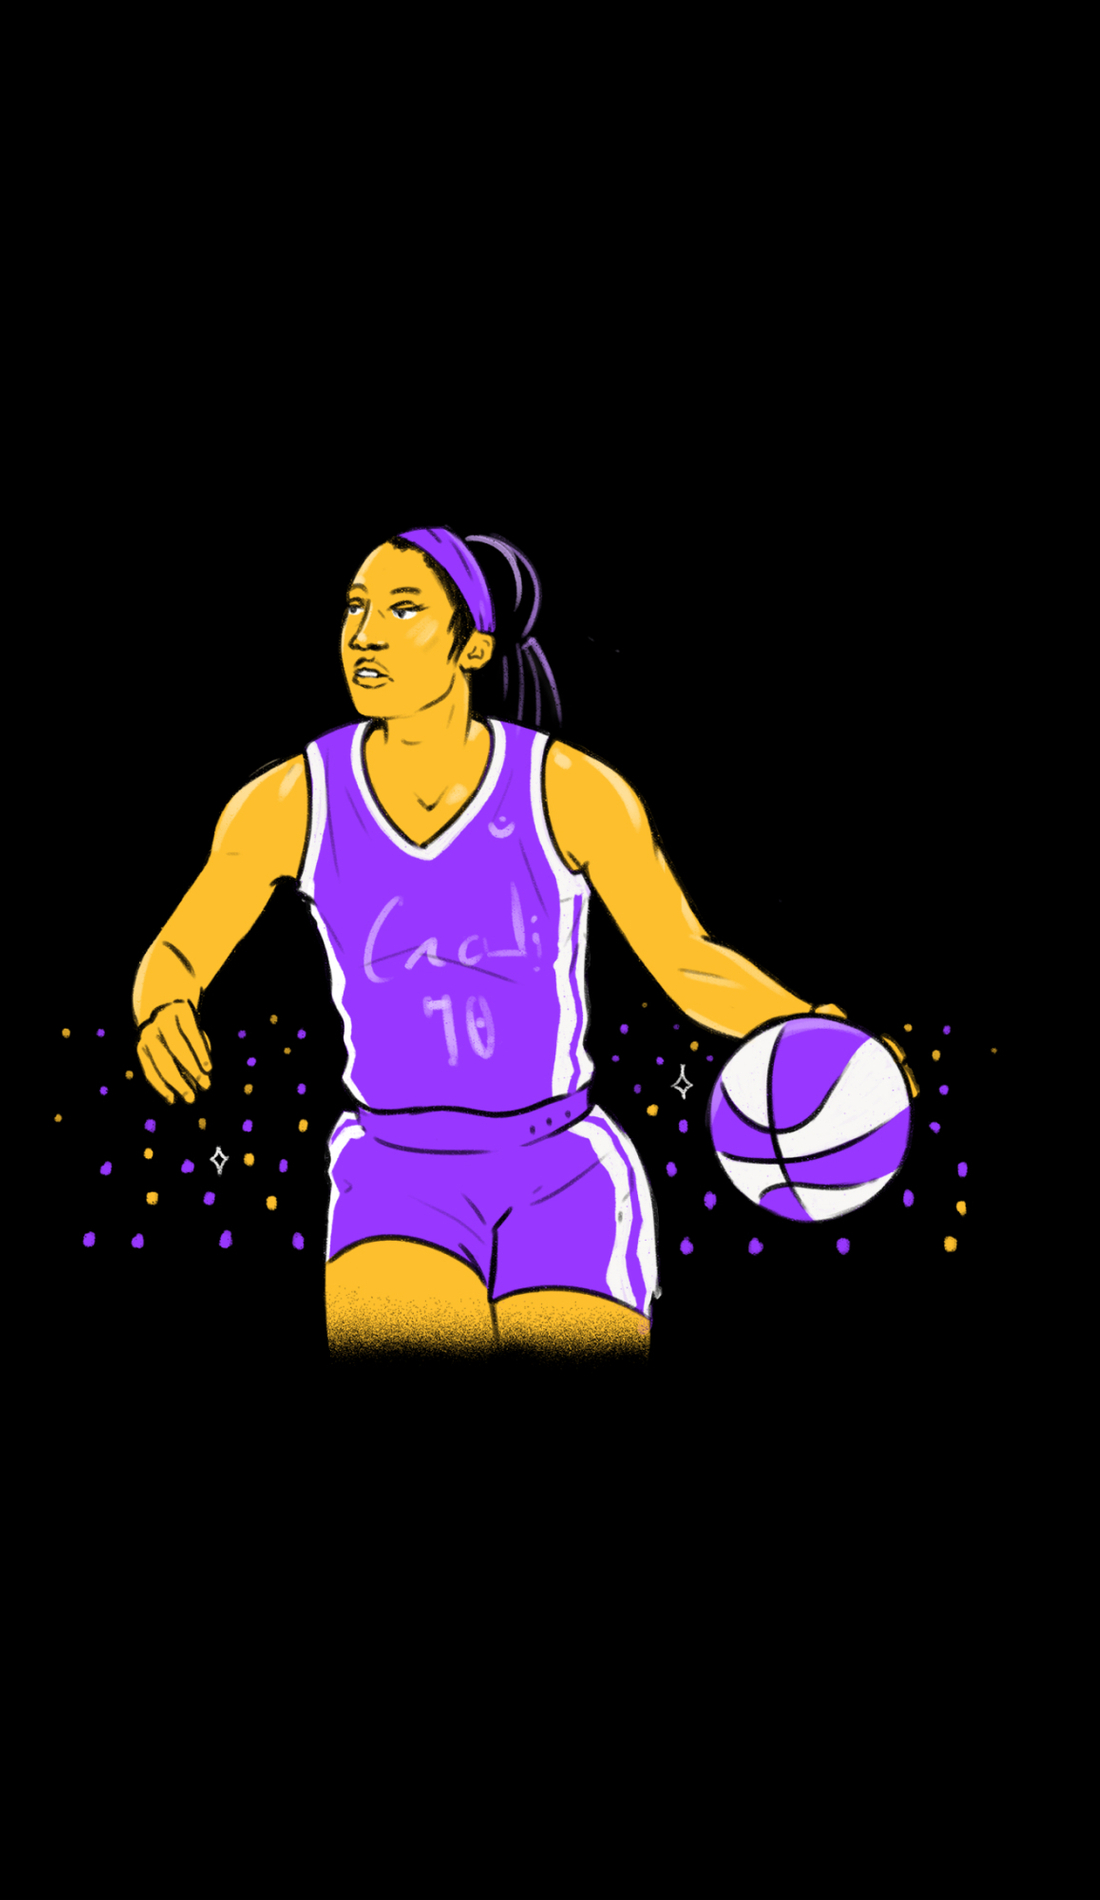 A WNBA All Star Game live event